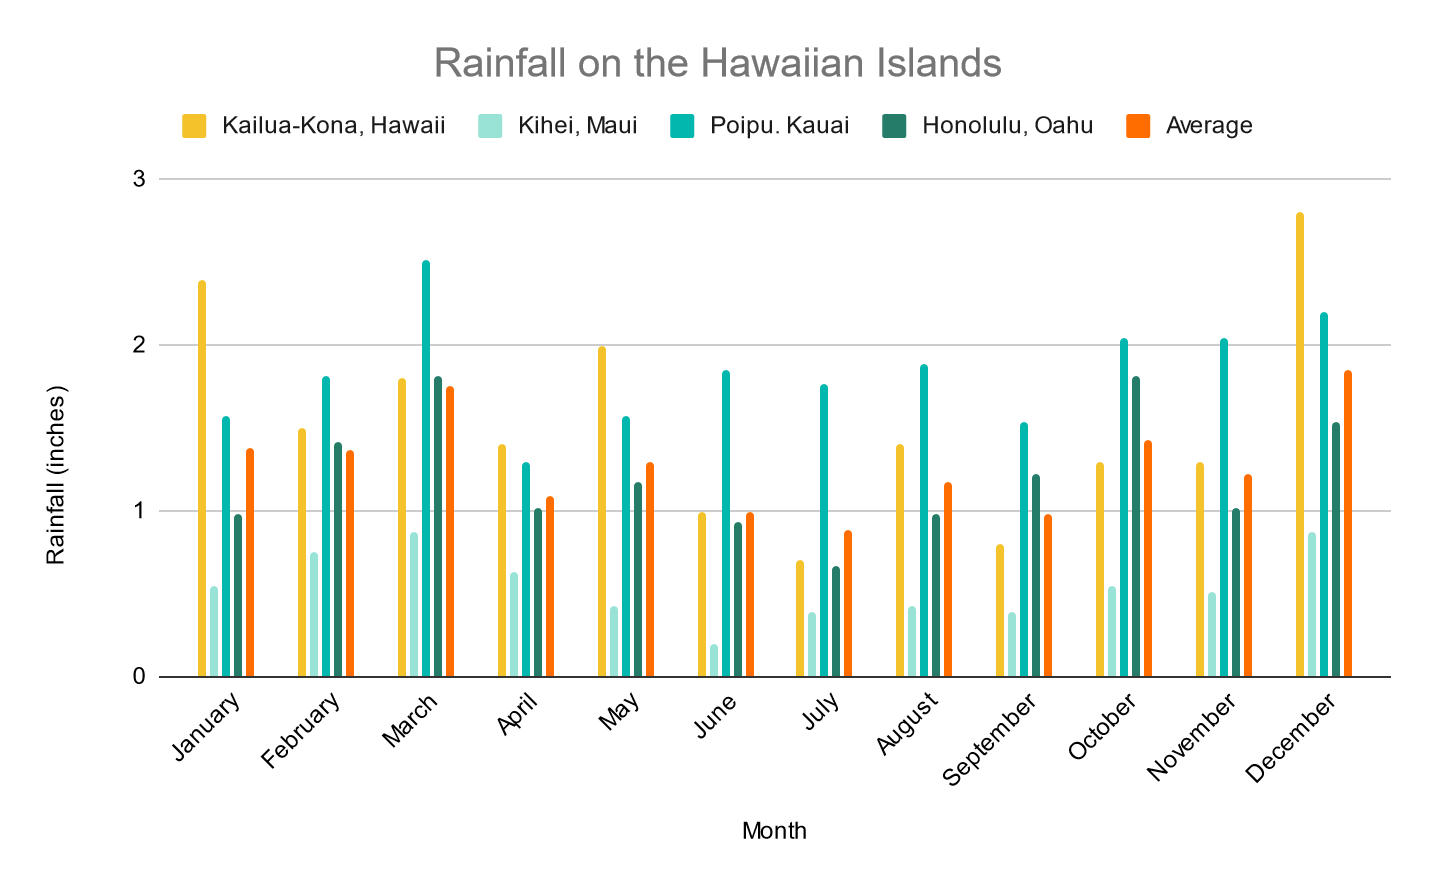 Hawaii in June - Rainfall on the Hawaiian Islands